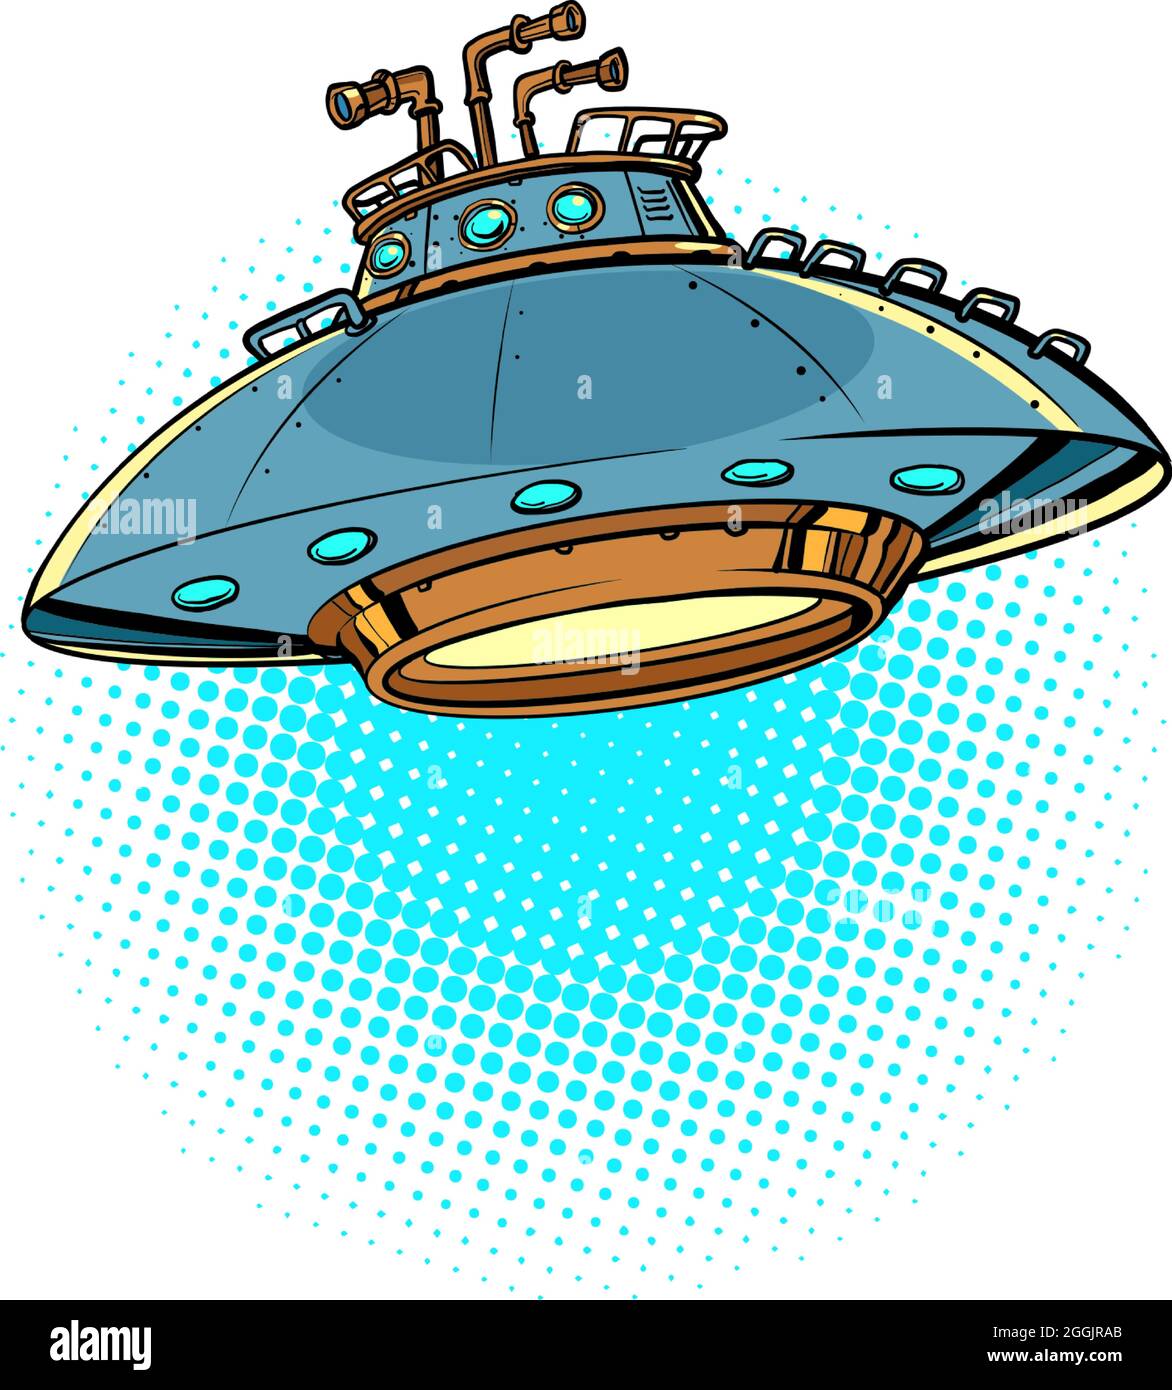 UFO fliegende Untertasse isoliert auf einem neutralen Hintergrund. Alien-Raumschiff Stock Vektor